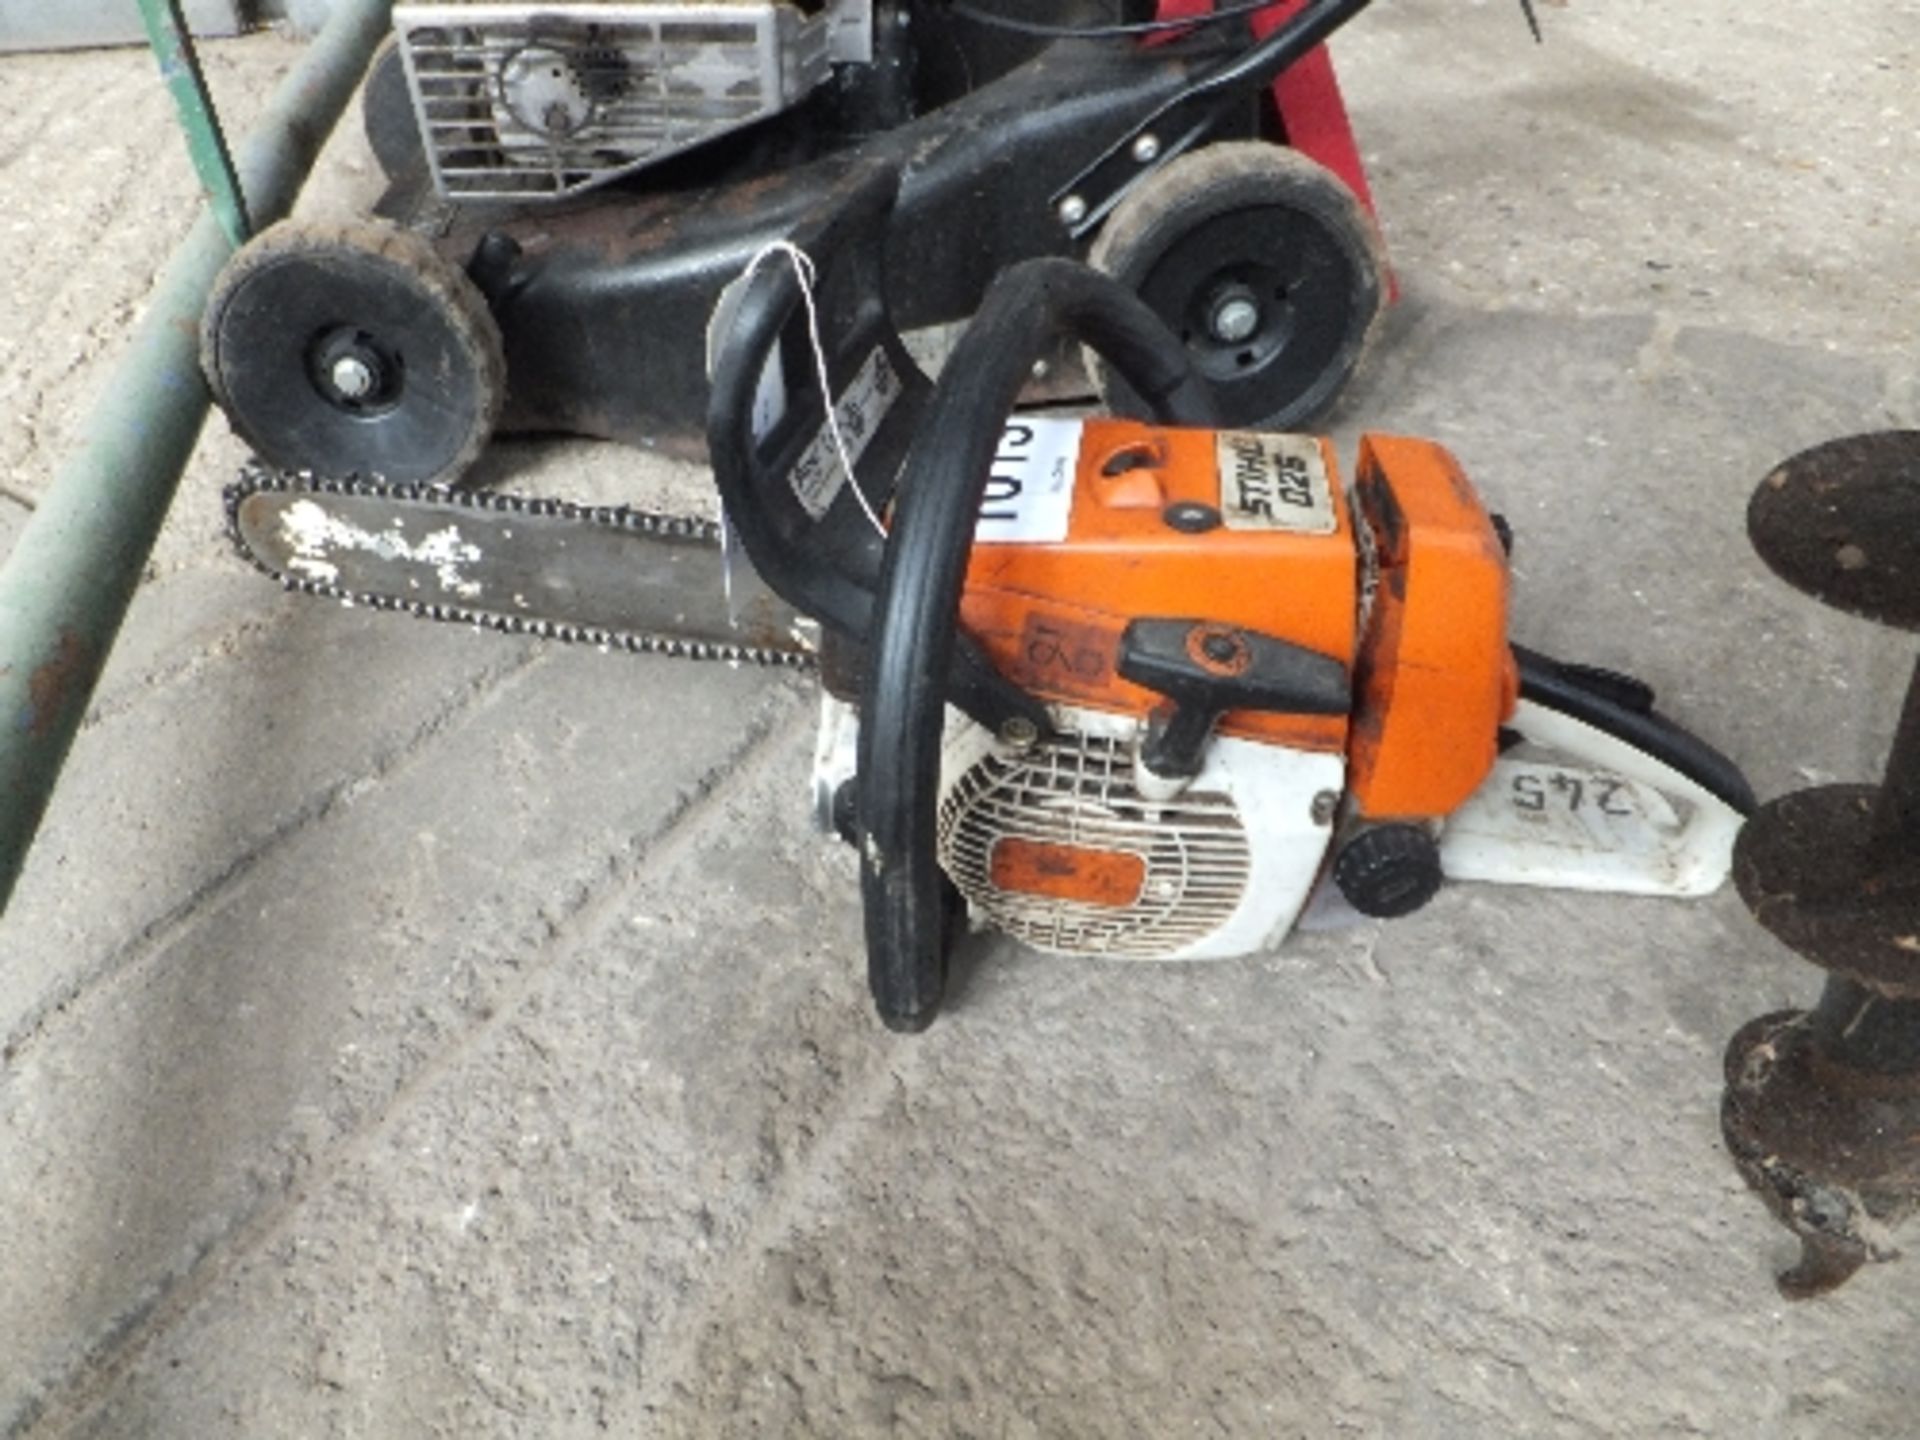 Stihl petrol chain saw for spares/repair